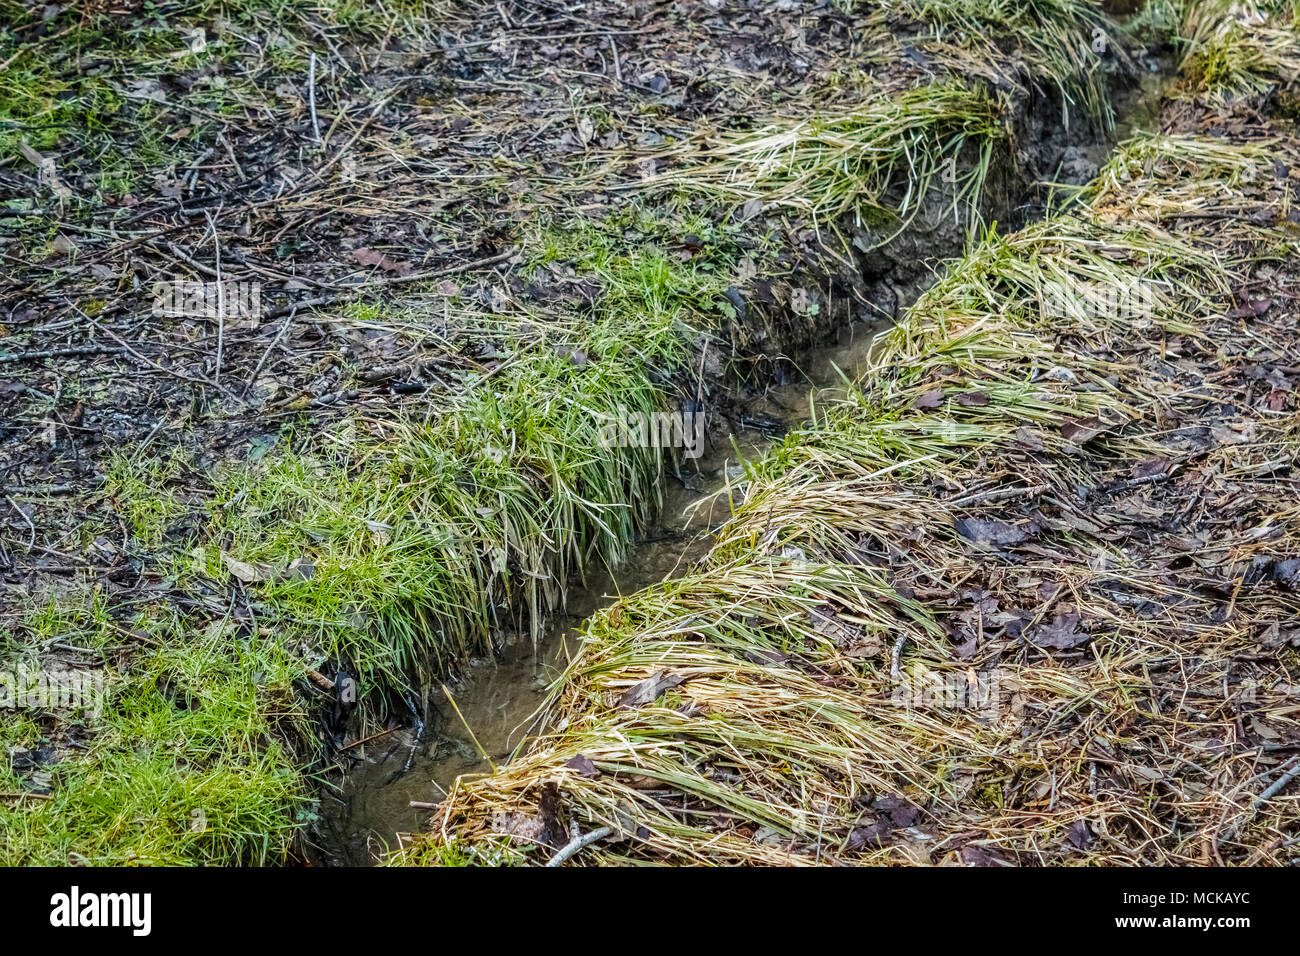 Una vista ingrandita di una fossa di scolo o 'swale' scavata per consentire lo scarico dell'acqua lontano da una zona umida, per prevenire inondazioni stagionali (Pacific Northwest). Foto Stock